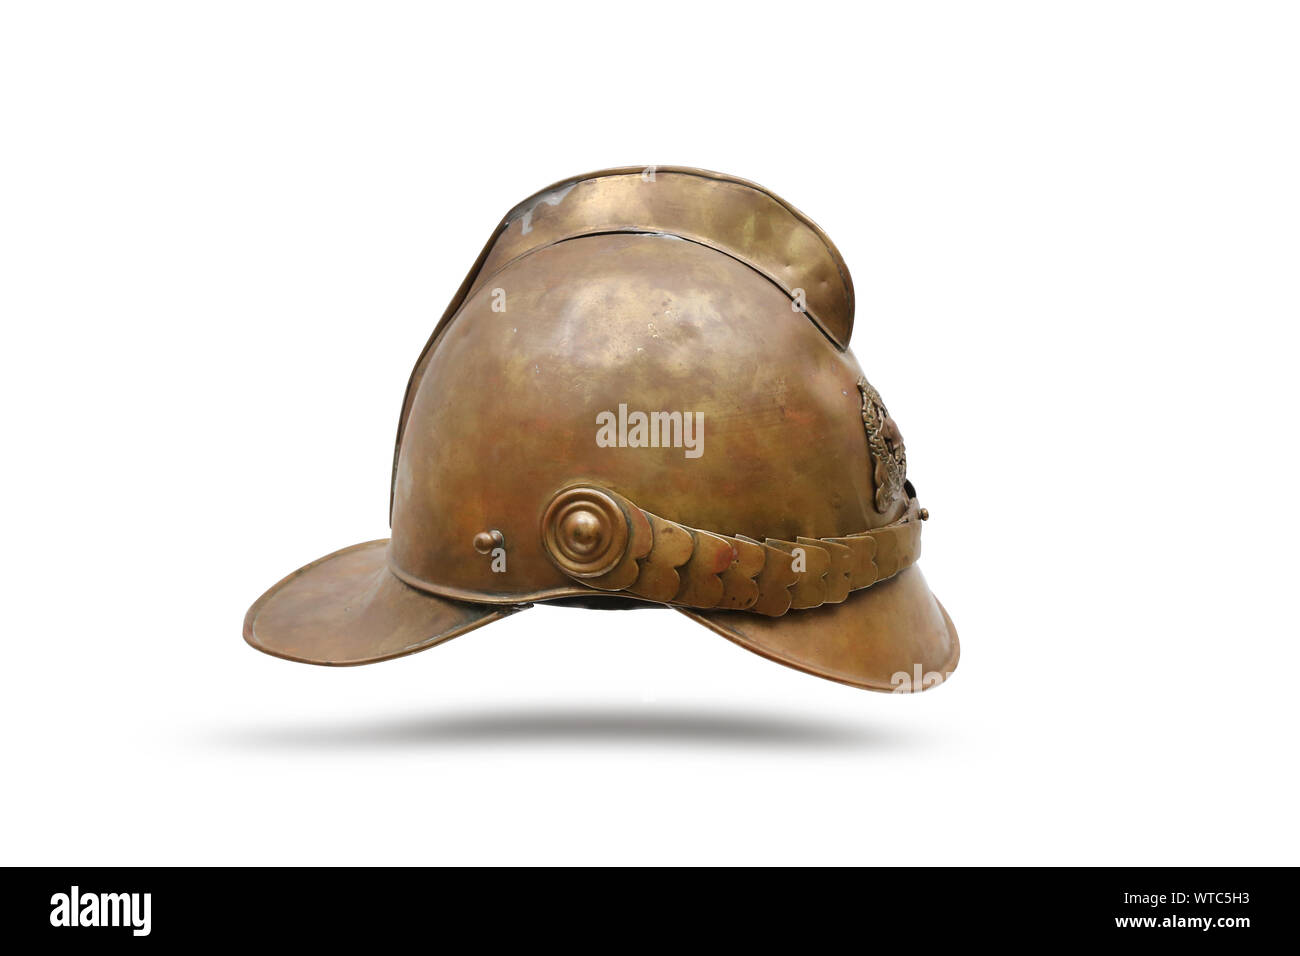 La Deuxième Guerre mondiale avant de pompier casque en laiton Letton Banque D'Images